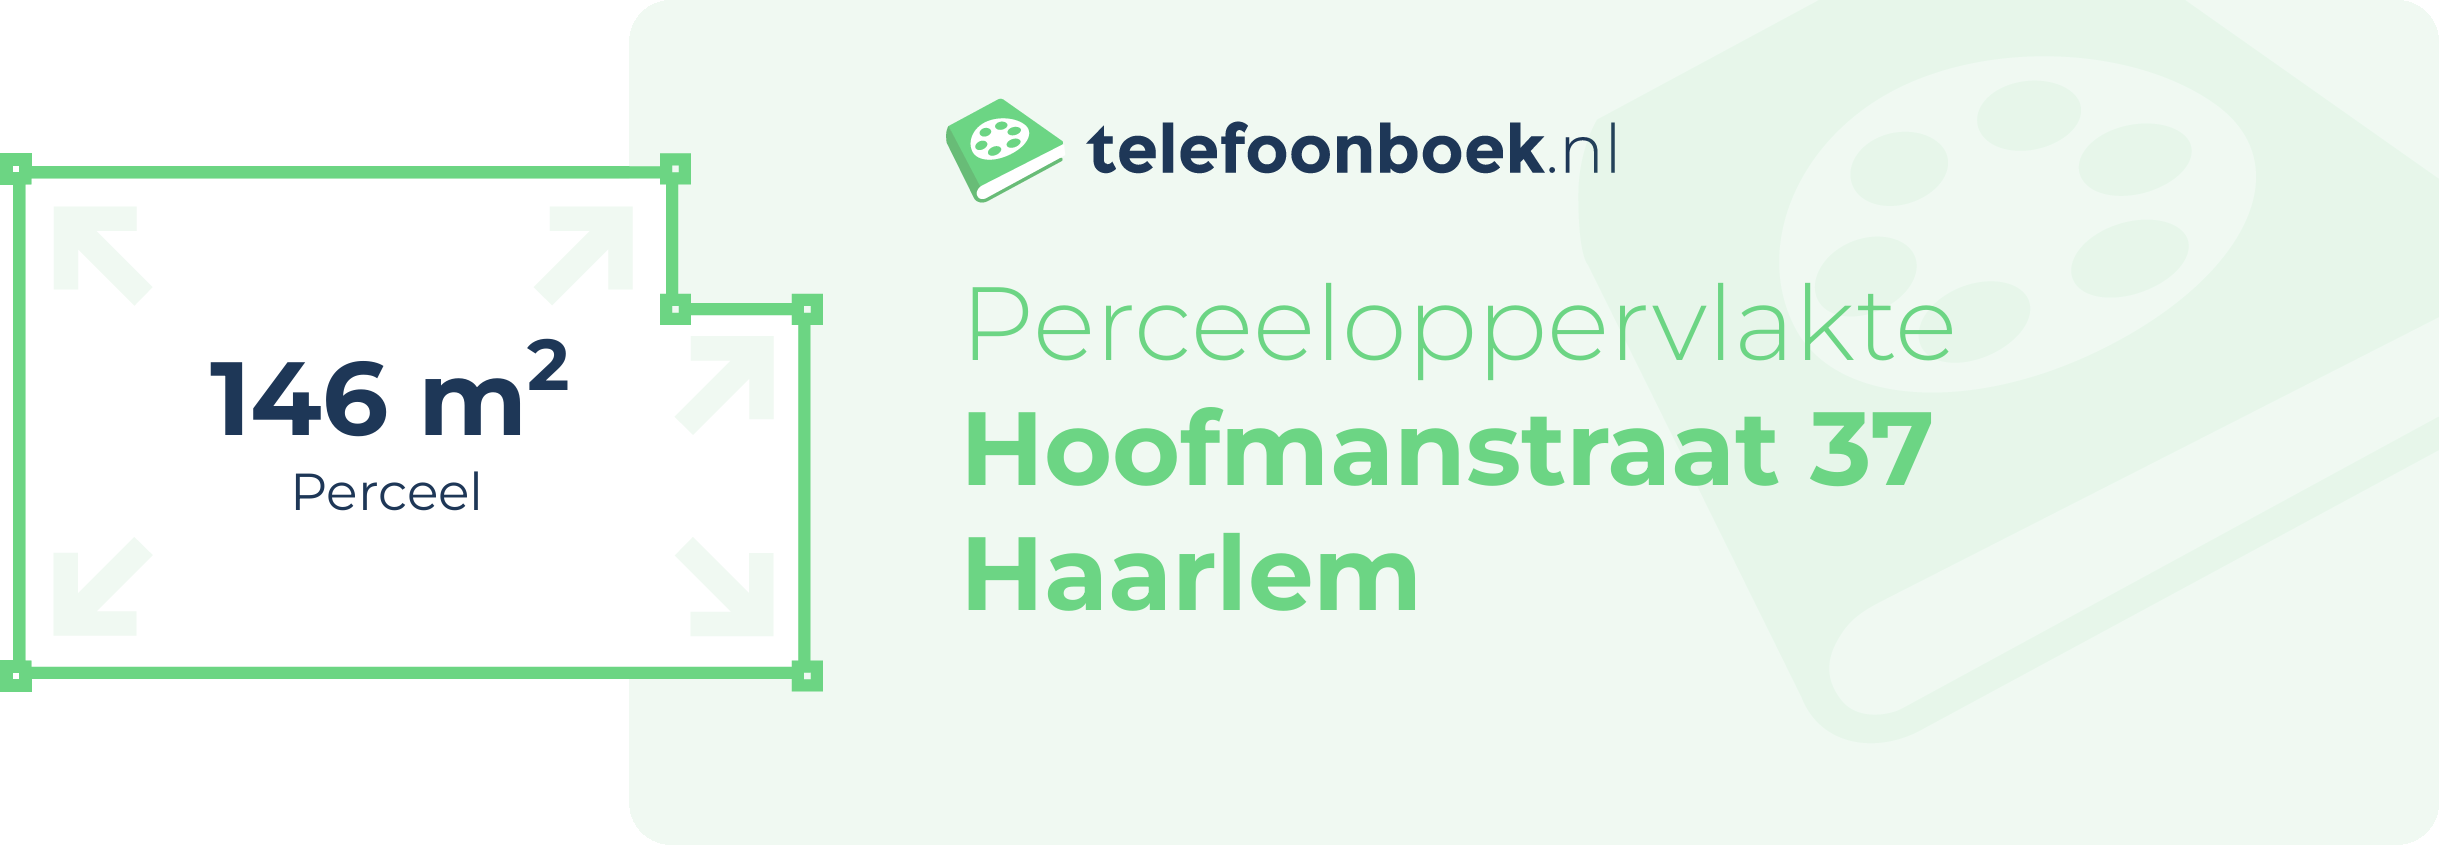 Perceeloppervlakte Hoofmanstraat 37 Haarlem